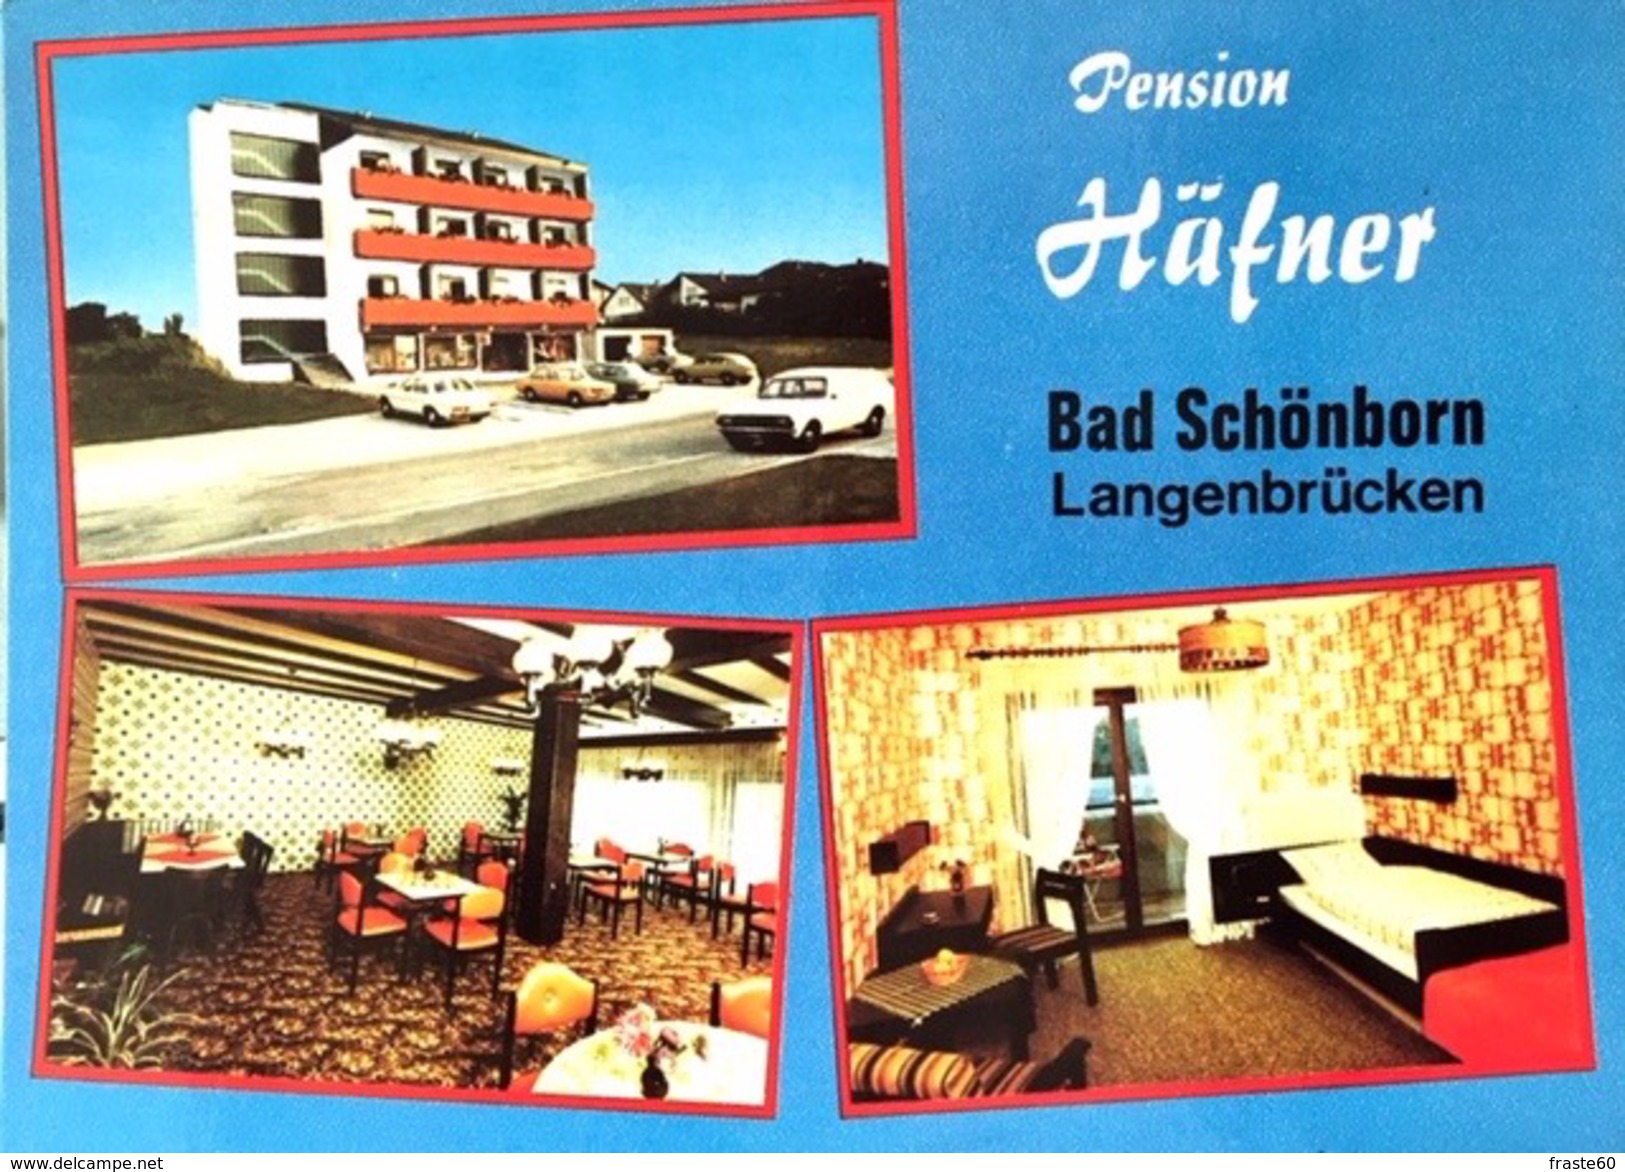 # Bad Schoenborn -Ortsteil Langenbrücken -  Pension Häfner - Bad Schoenborn